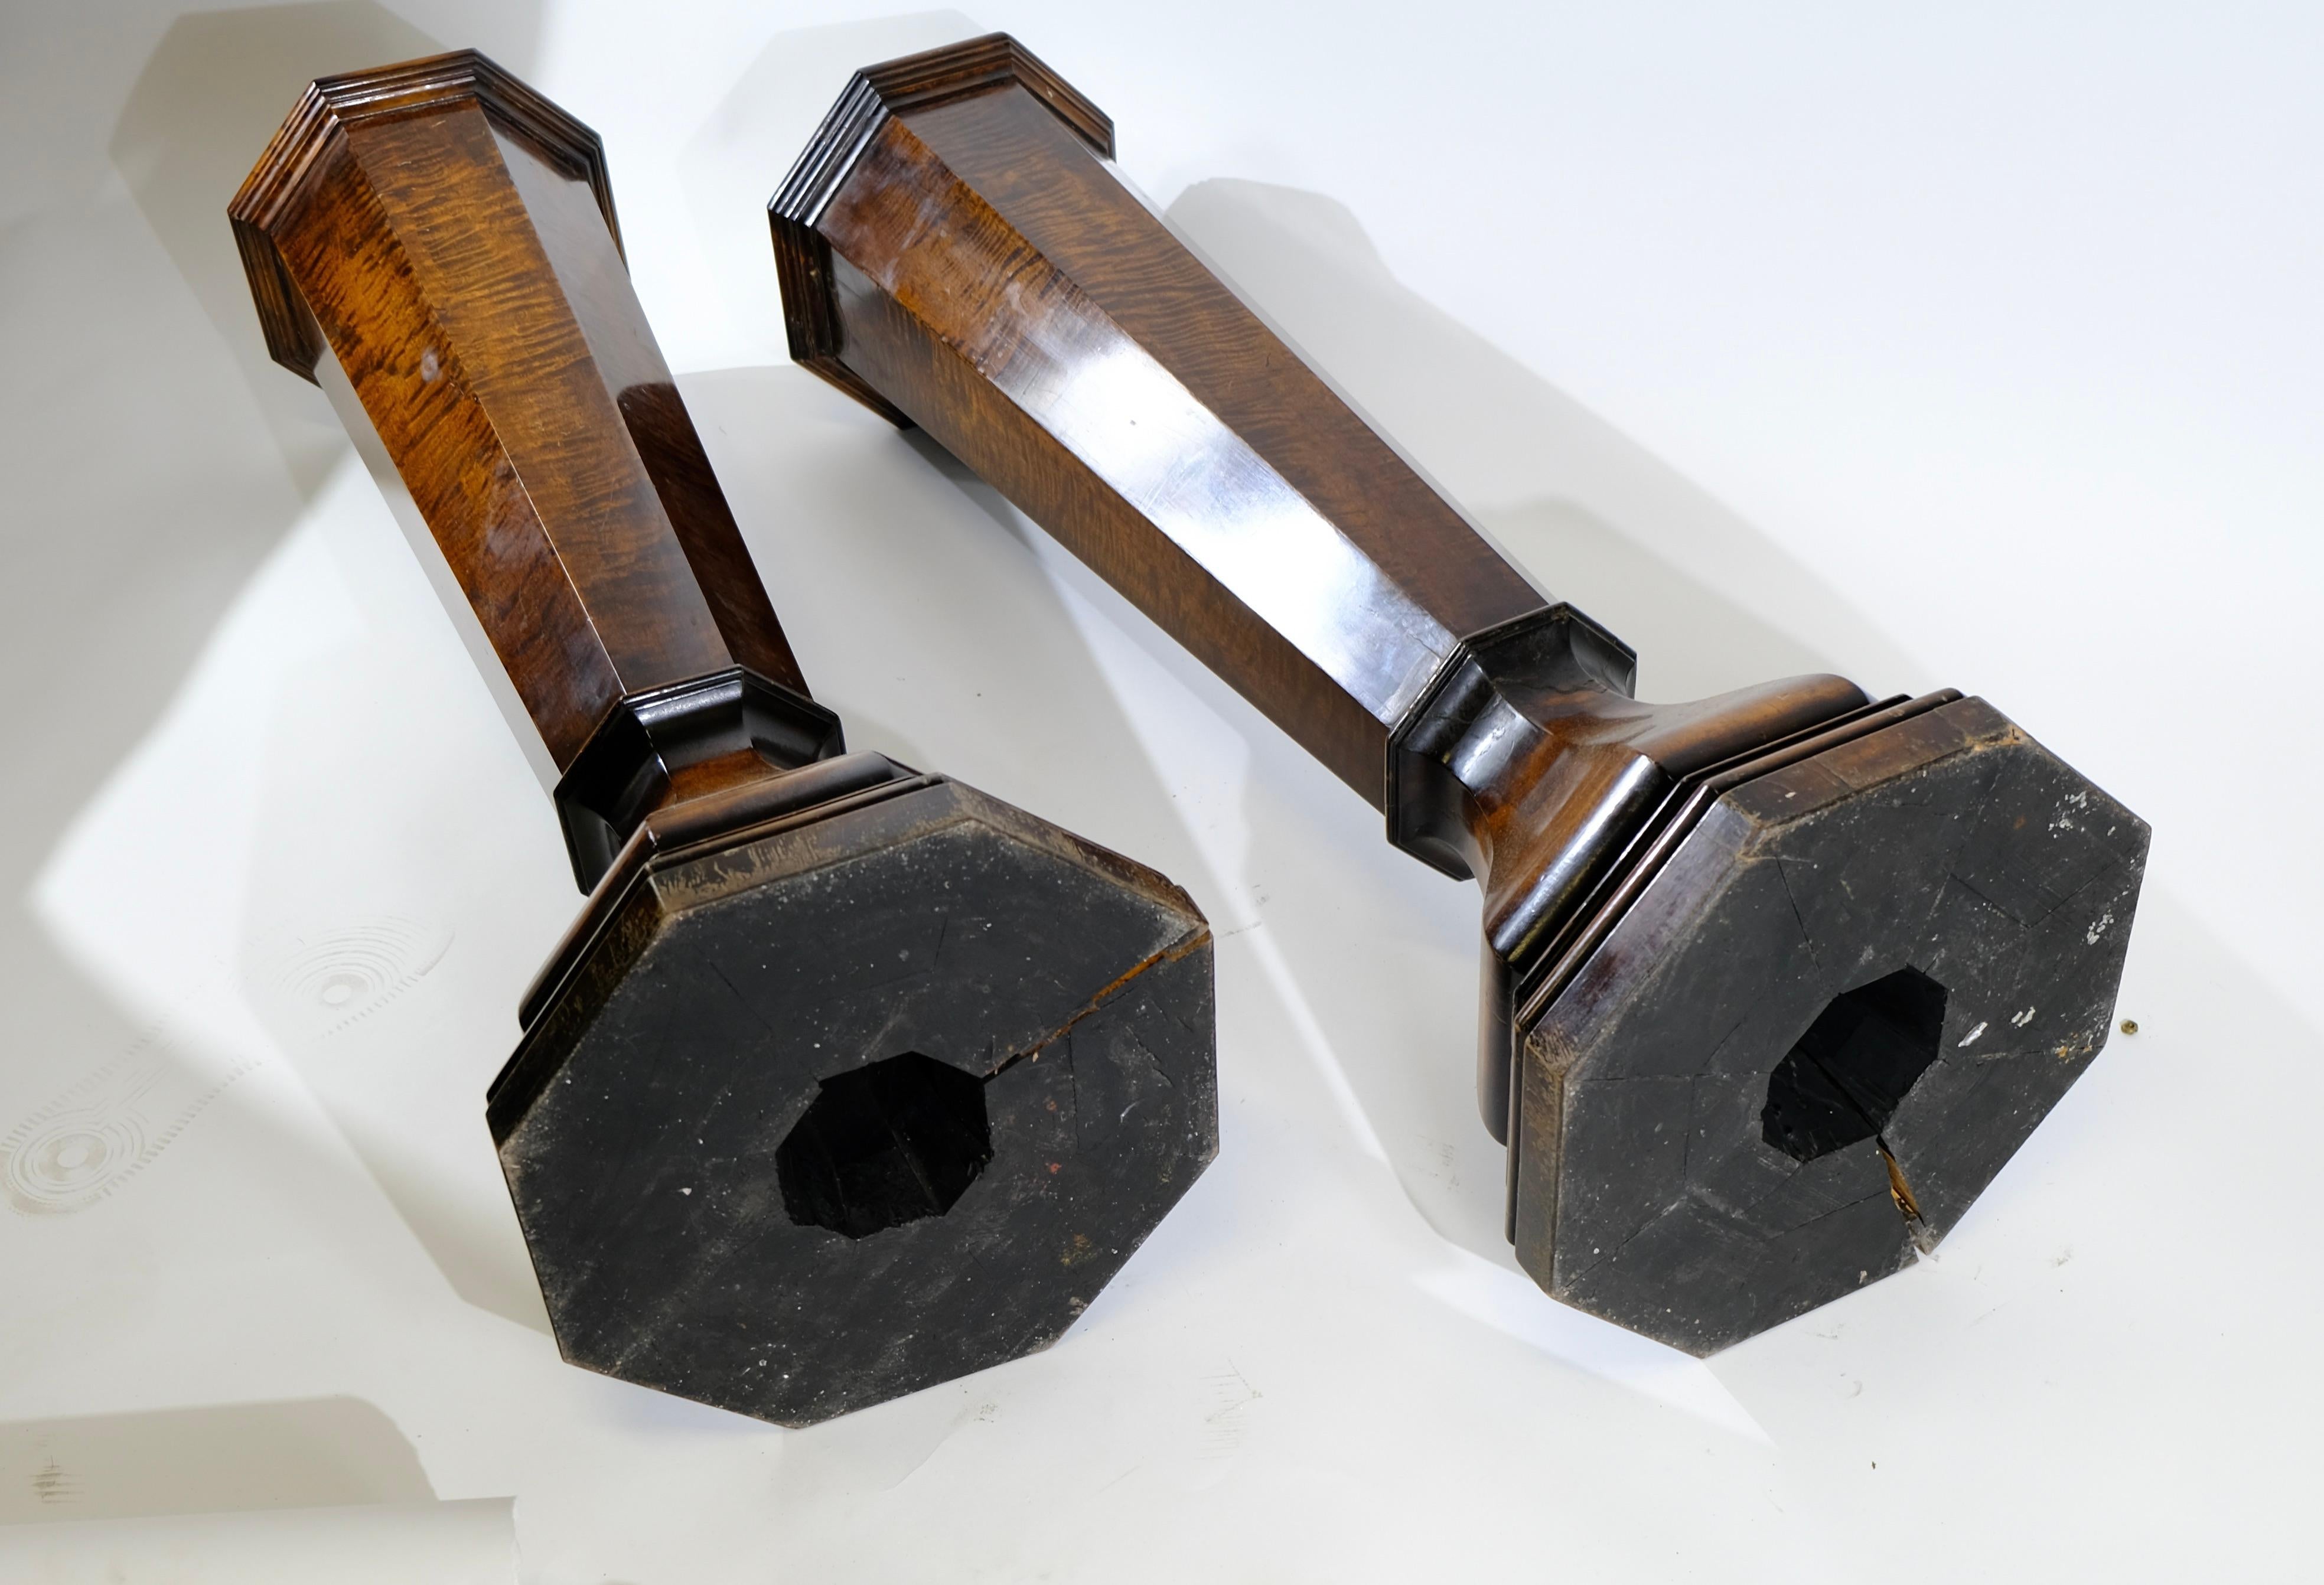 Une paire de piédestaux au design intéressant. Français et fabriqué vers 1920. Stable pour y placer des candélabres ou des urnes.
La partie supérieure est de 20x20 cm, la partie inférieure de 30x30 cm.